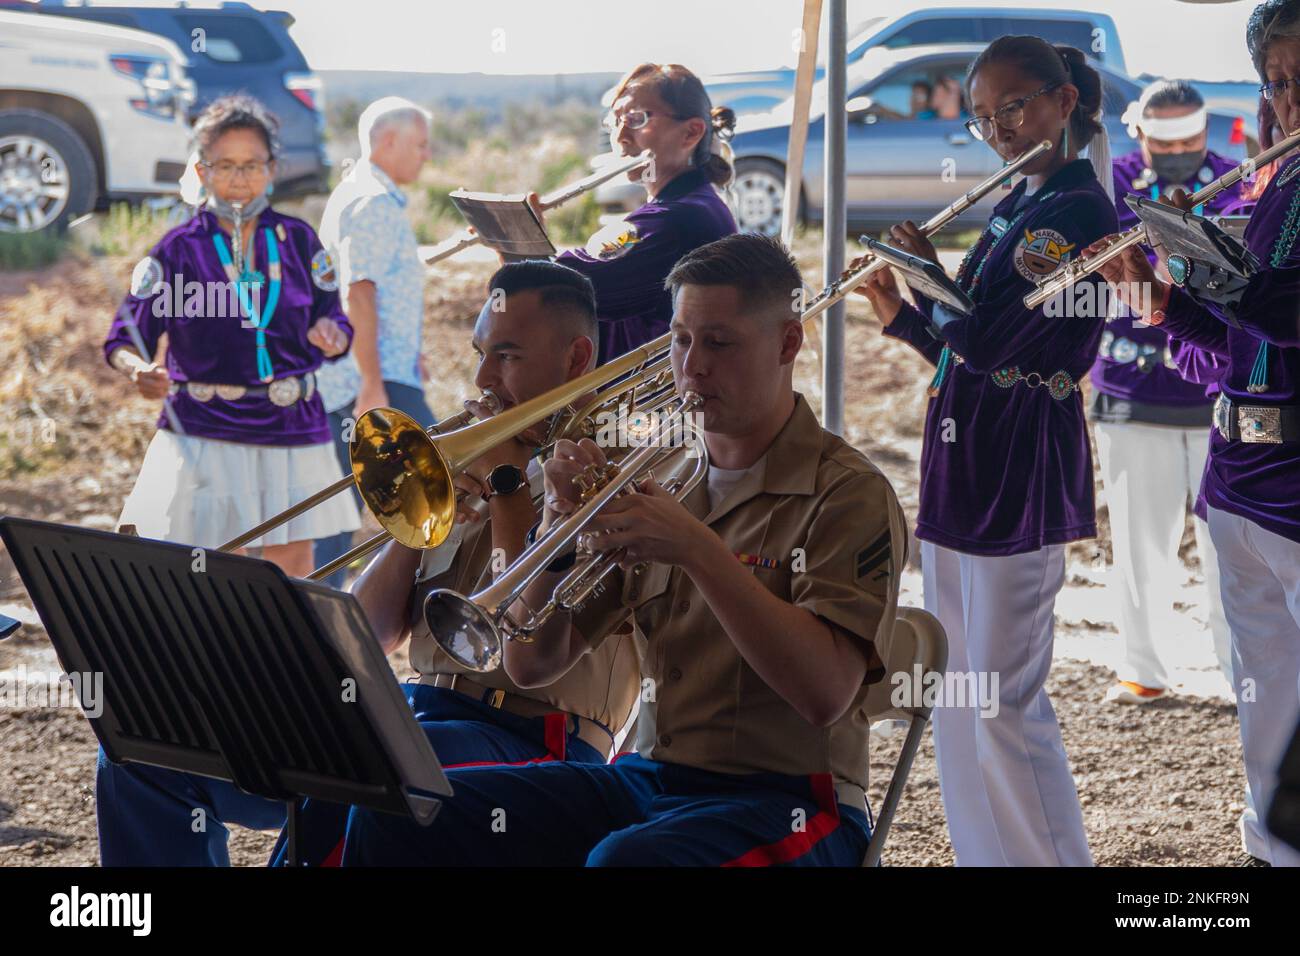 Die Marine Forces Reserve Band tritt zusammen mit der Navajo Nation Band während des 80. Jahrestages der Gründung der Navajo Code Talkers in Tse Bonito, N.M., am 14. August 2022 auf. Das Marine Corps unterstützt den 80. Jahrestag der Gründung der Navajo Code Talkers und die entscheidende Rolle, die sie in der Pacific Island Hopping Kampagne im Zweiten Weltkrieg gespielt haben Stockfoto